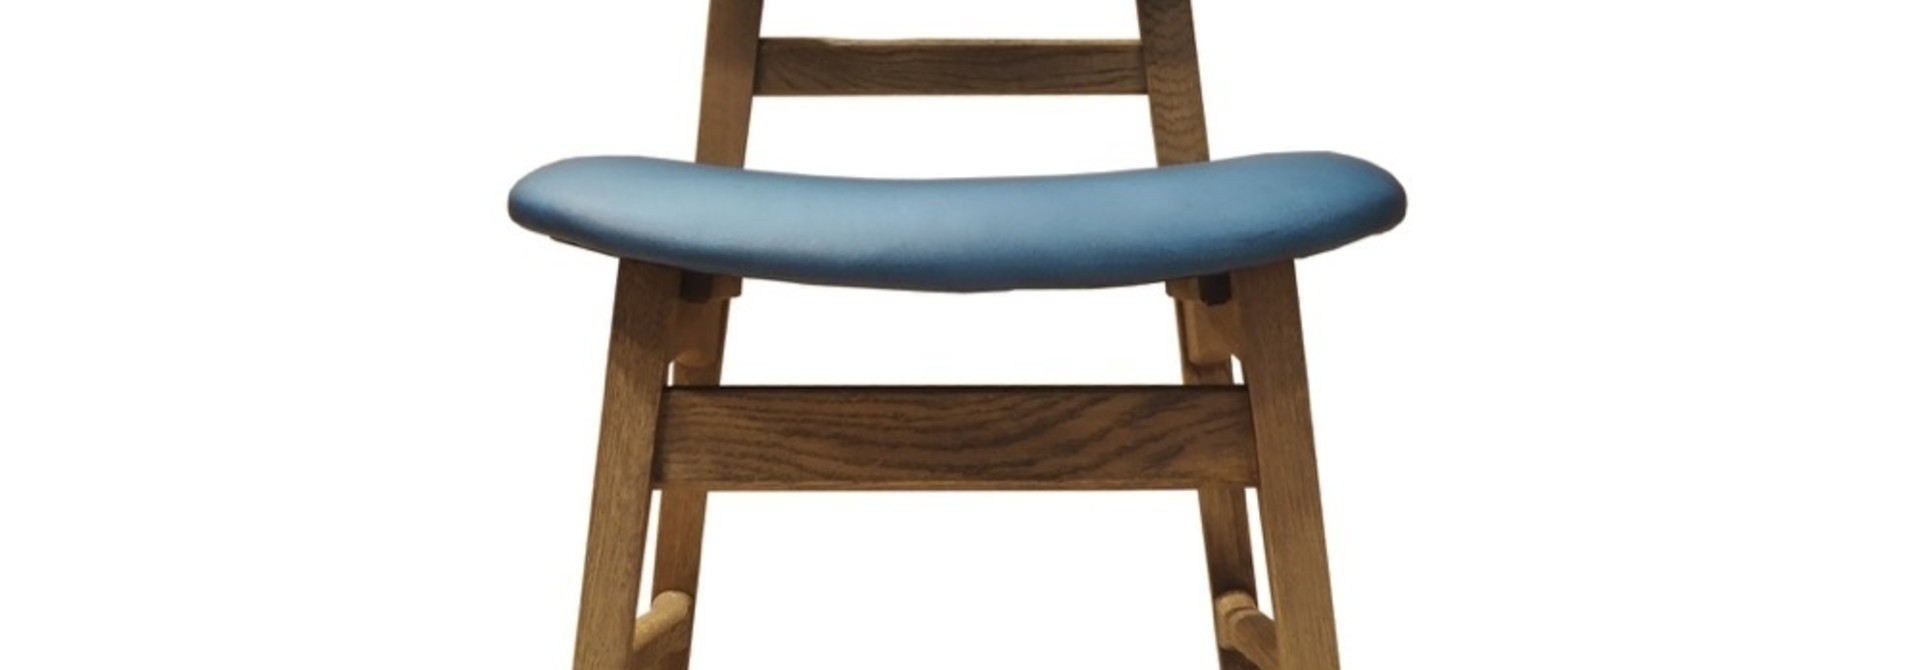 Sturdy Barn chair